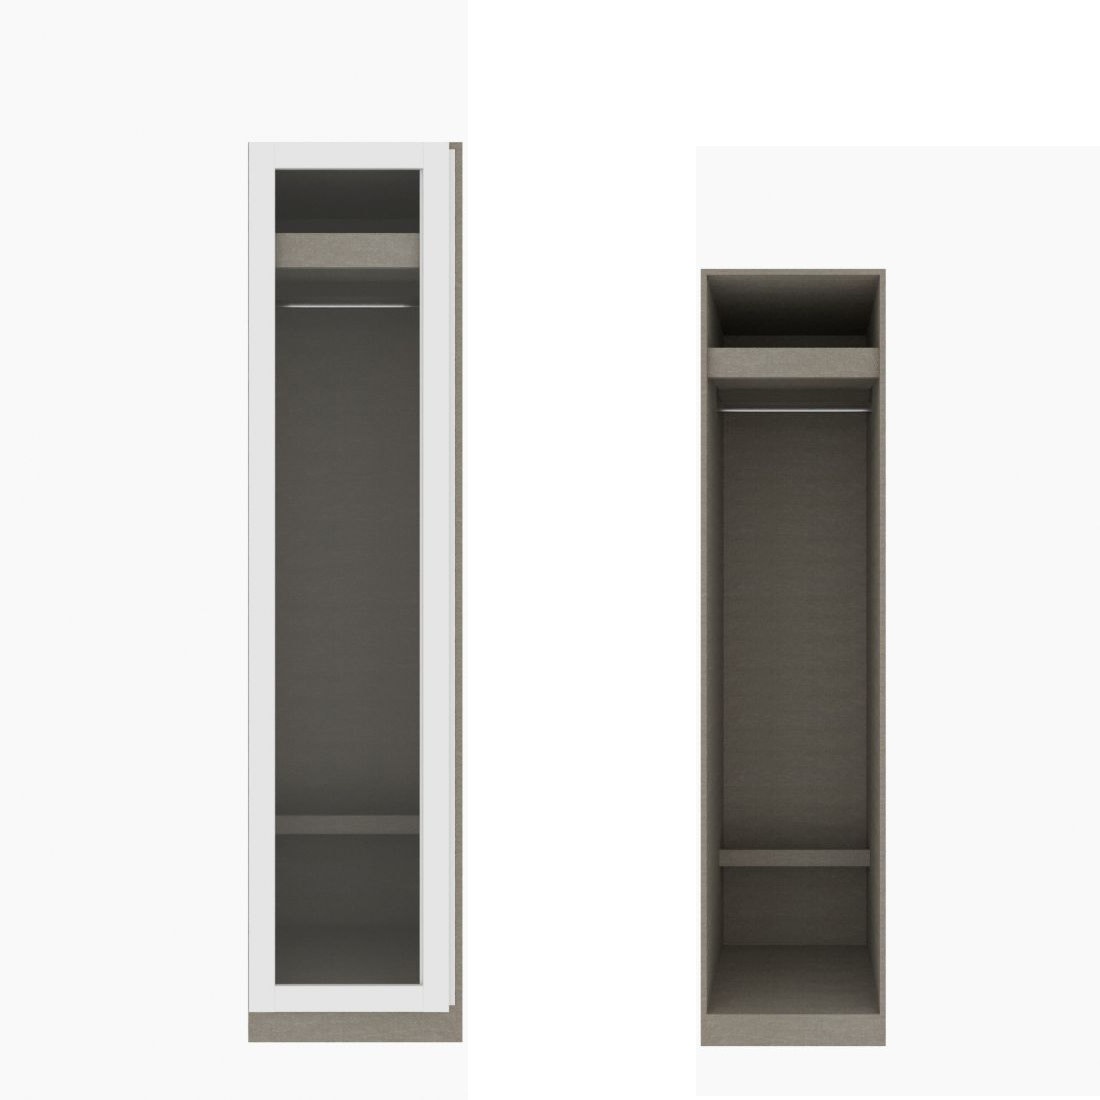 ตู้เสื้อผ้า ราวแขวนโล่ง OP-J (หน้าบานเปิดซ้าย) ขนาด 50 ซม. รุ่น Blox สีขาว&กระจกใส01